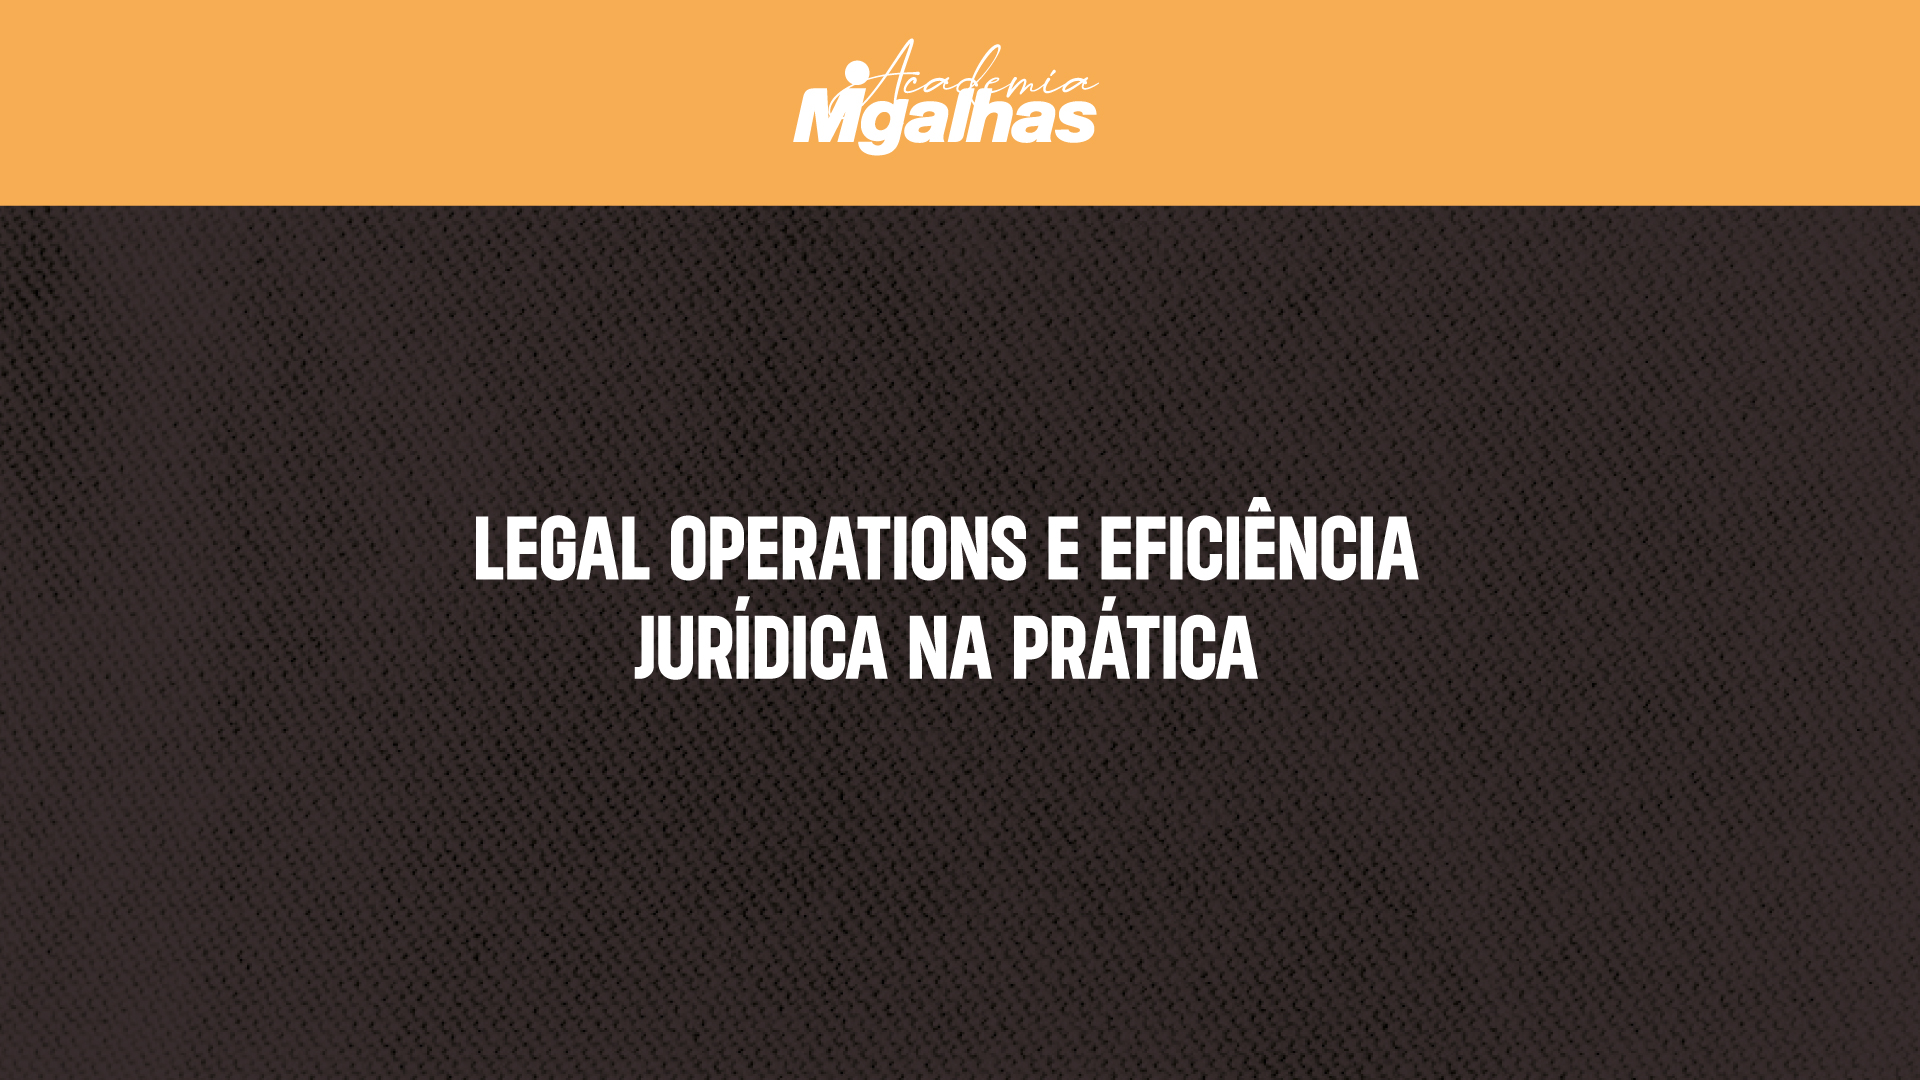 Legal Operations e Eficiência Jurídica na prática